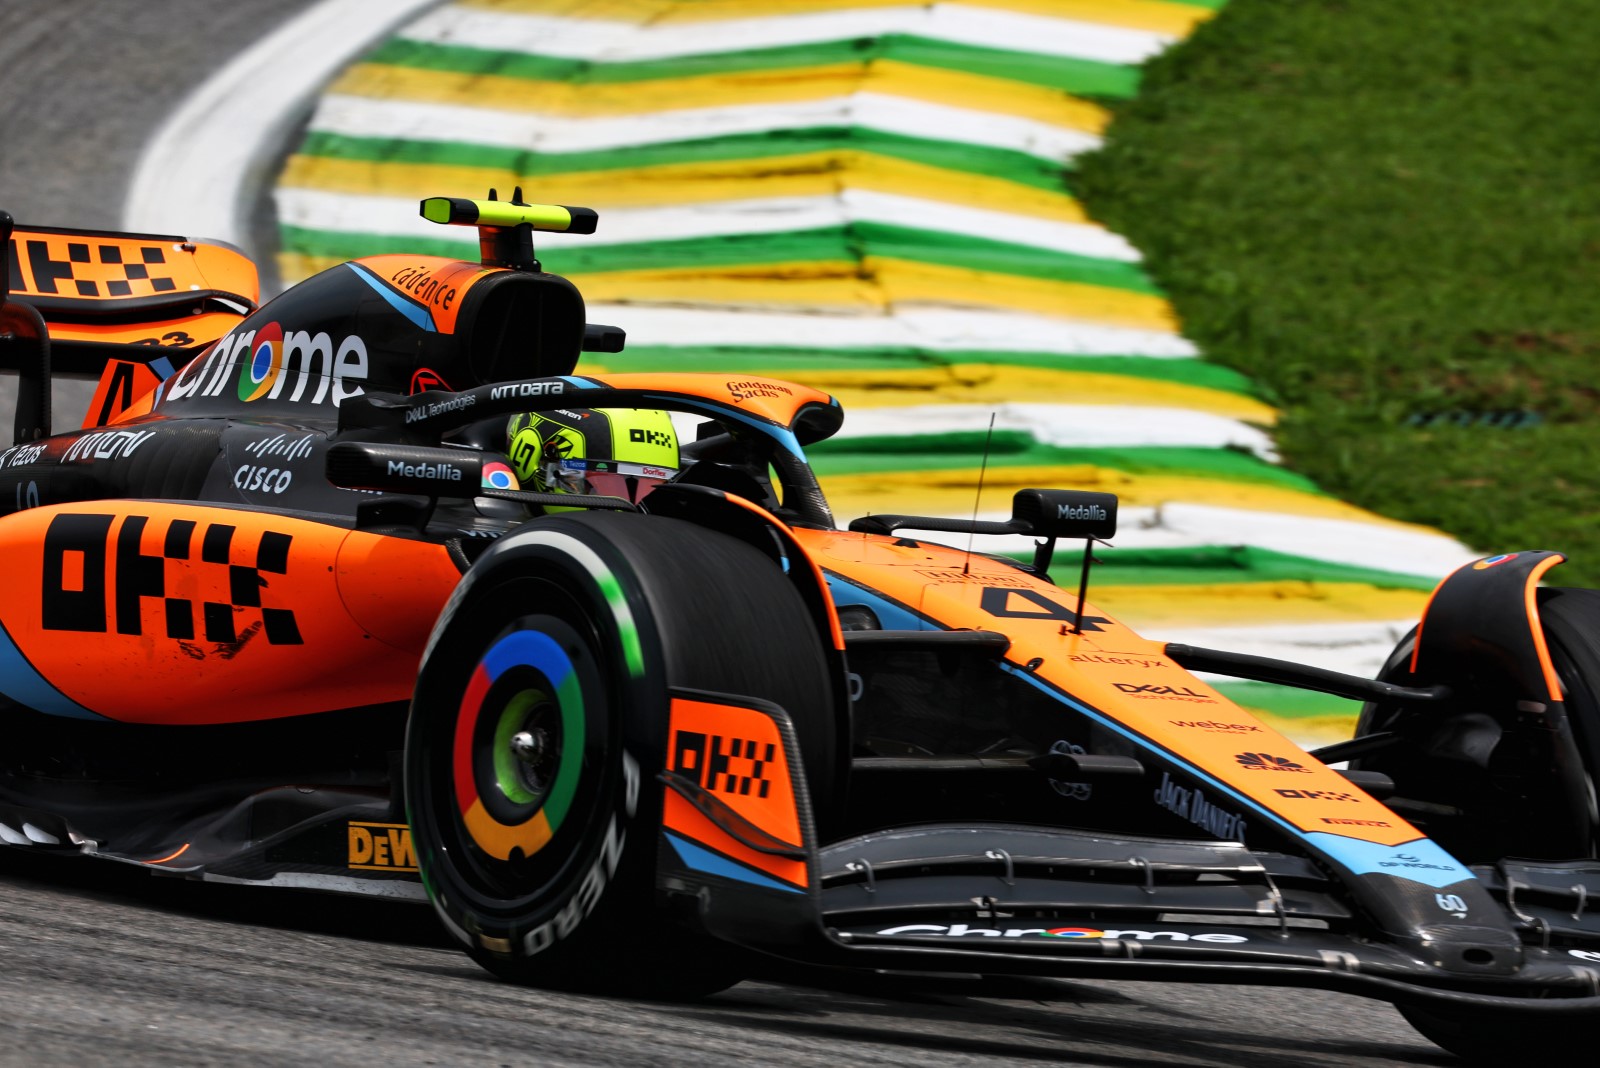 BrazilGP, McLaren, Norris